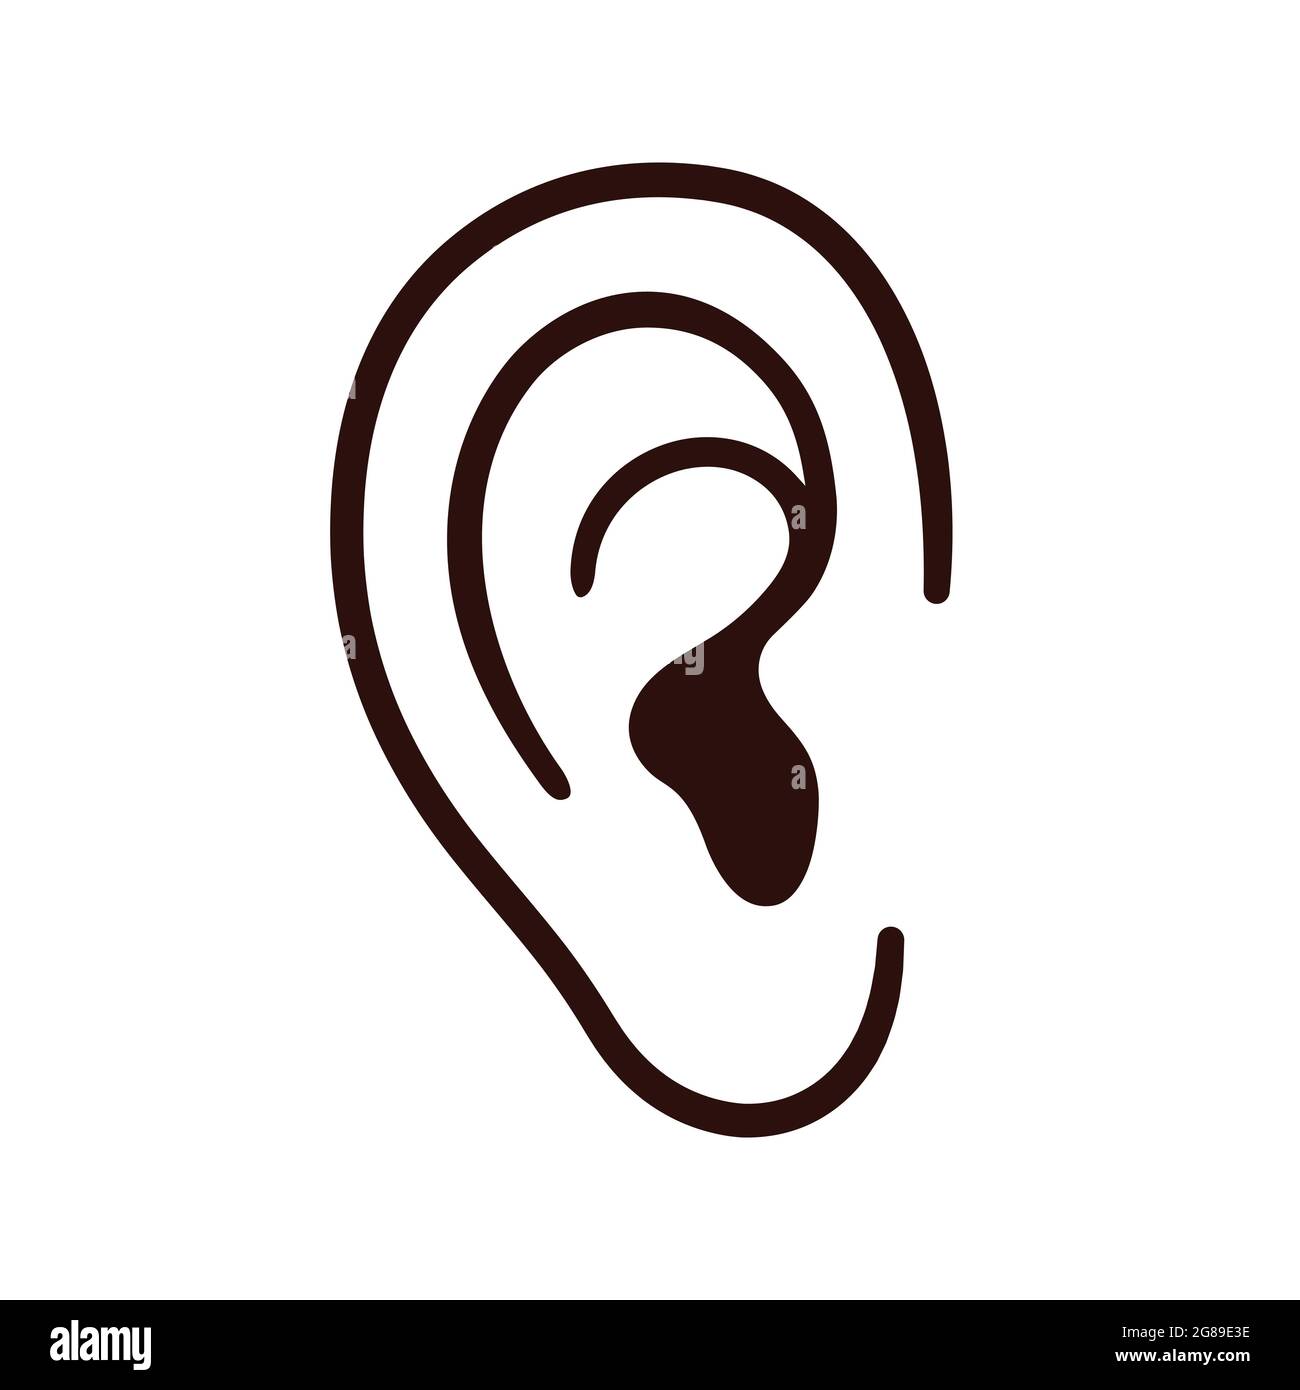 Icona della linea dell'orecchio umano, semplice disegno del cartone animato. Contorni in bianco e nero. Illustrazione della clip art vettoriale isolata. Illustrazione Vettoriale